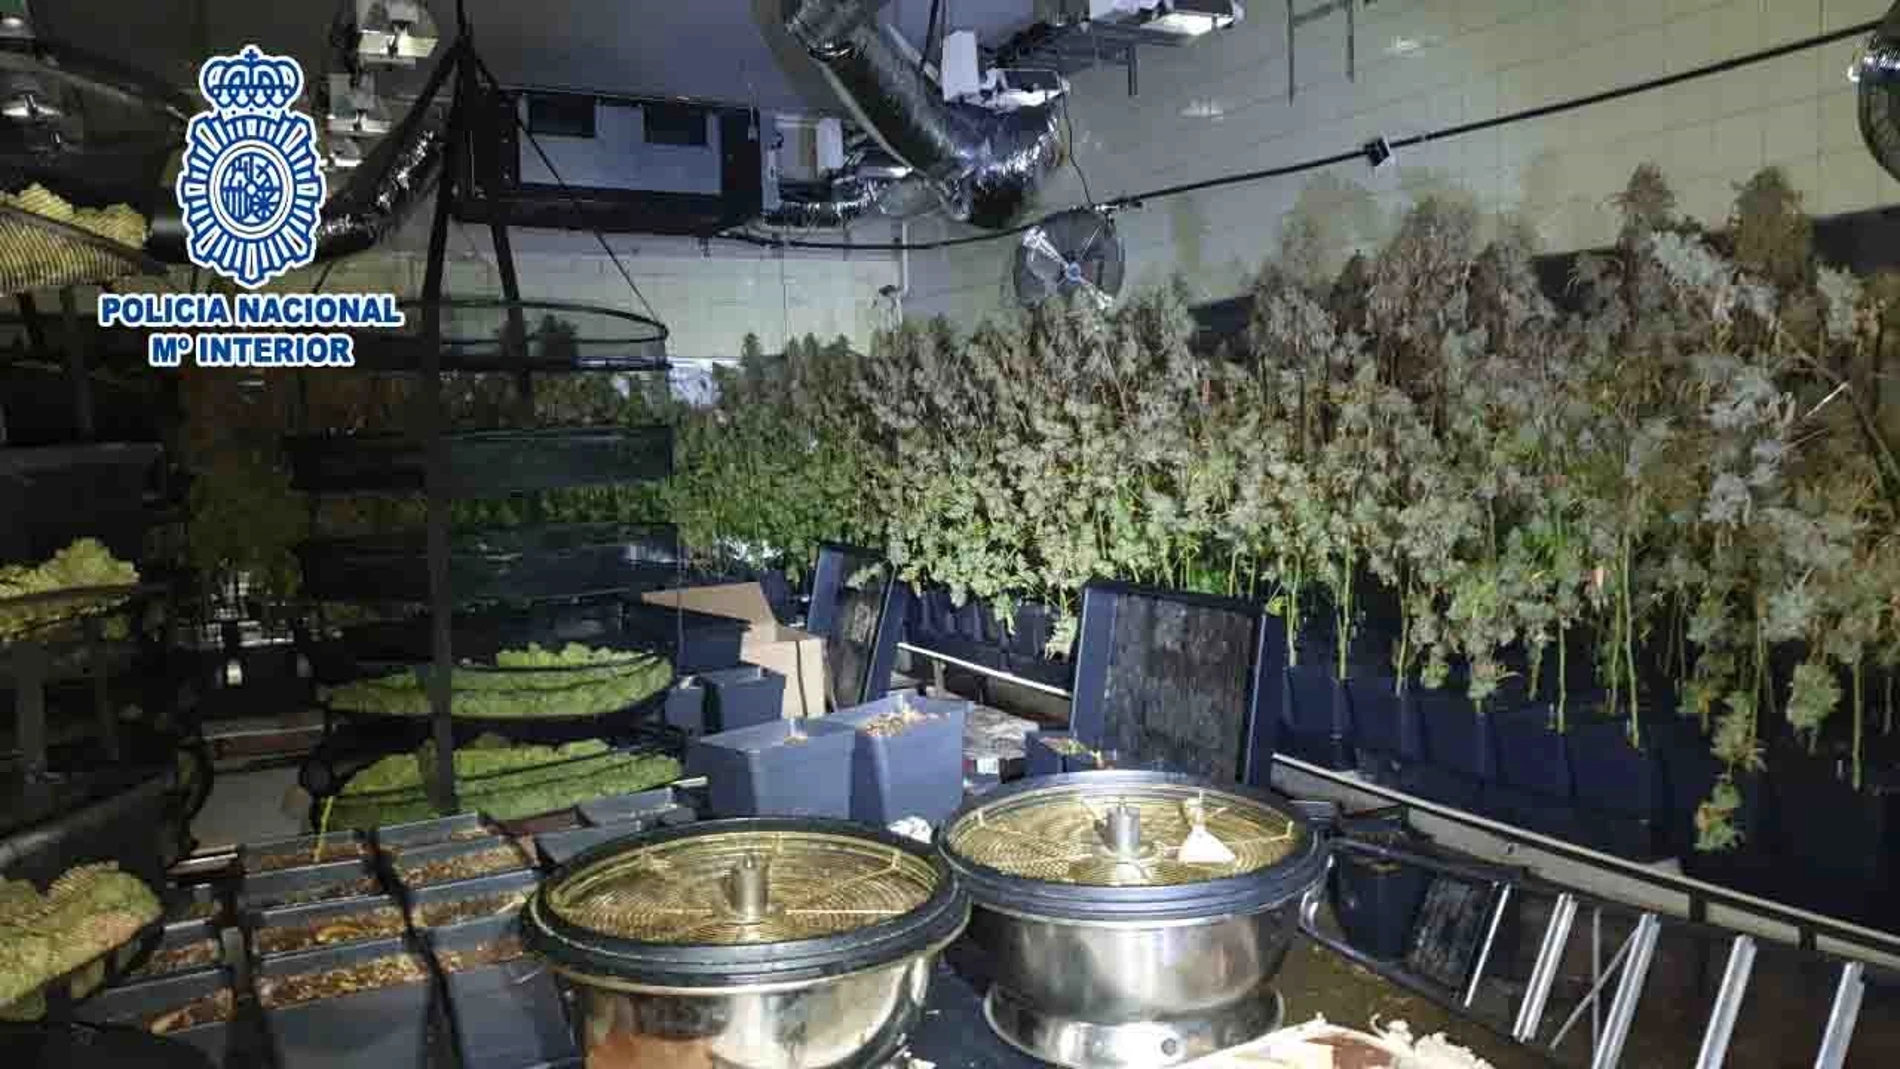 La Policía Nacional desmantela una plantación de marihuana en una chatarrería de Sant Feliu de Llobregat. POLICÍA NACIONAL